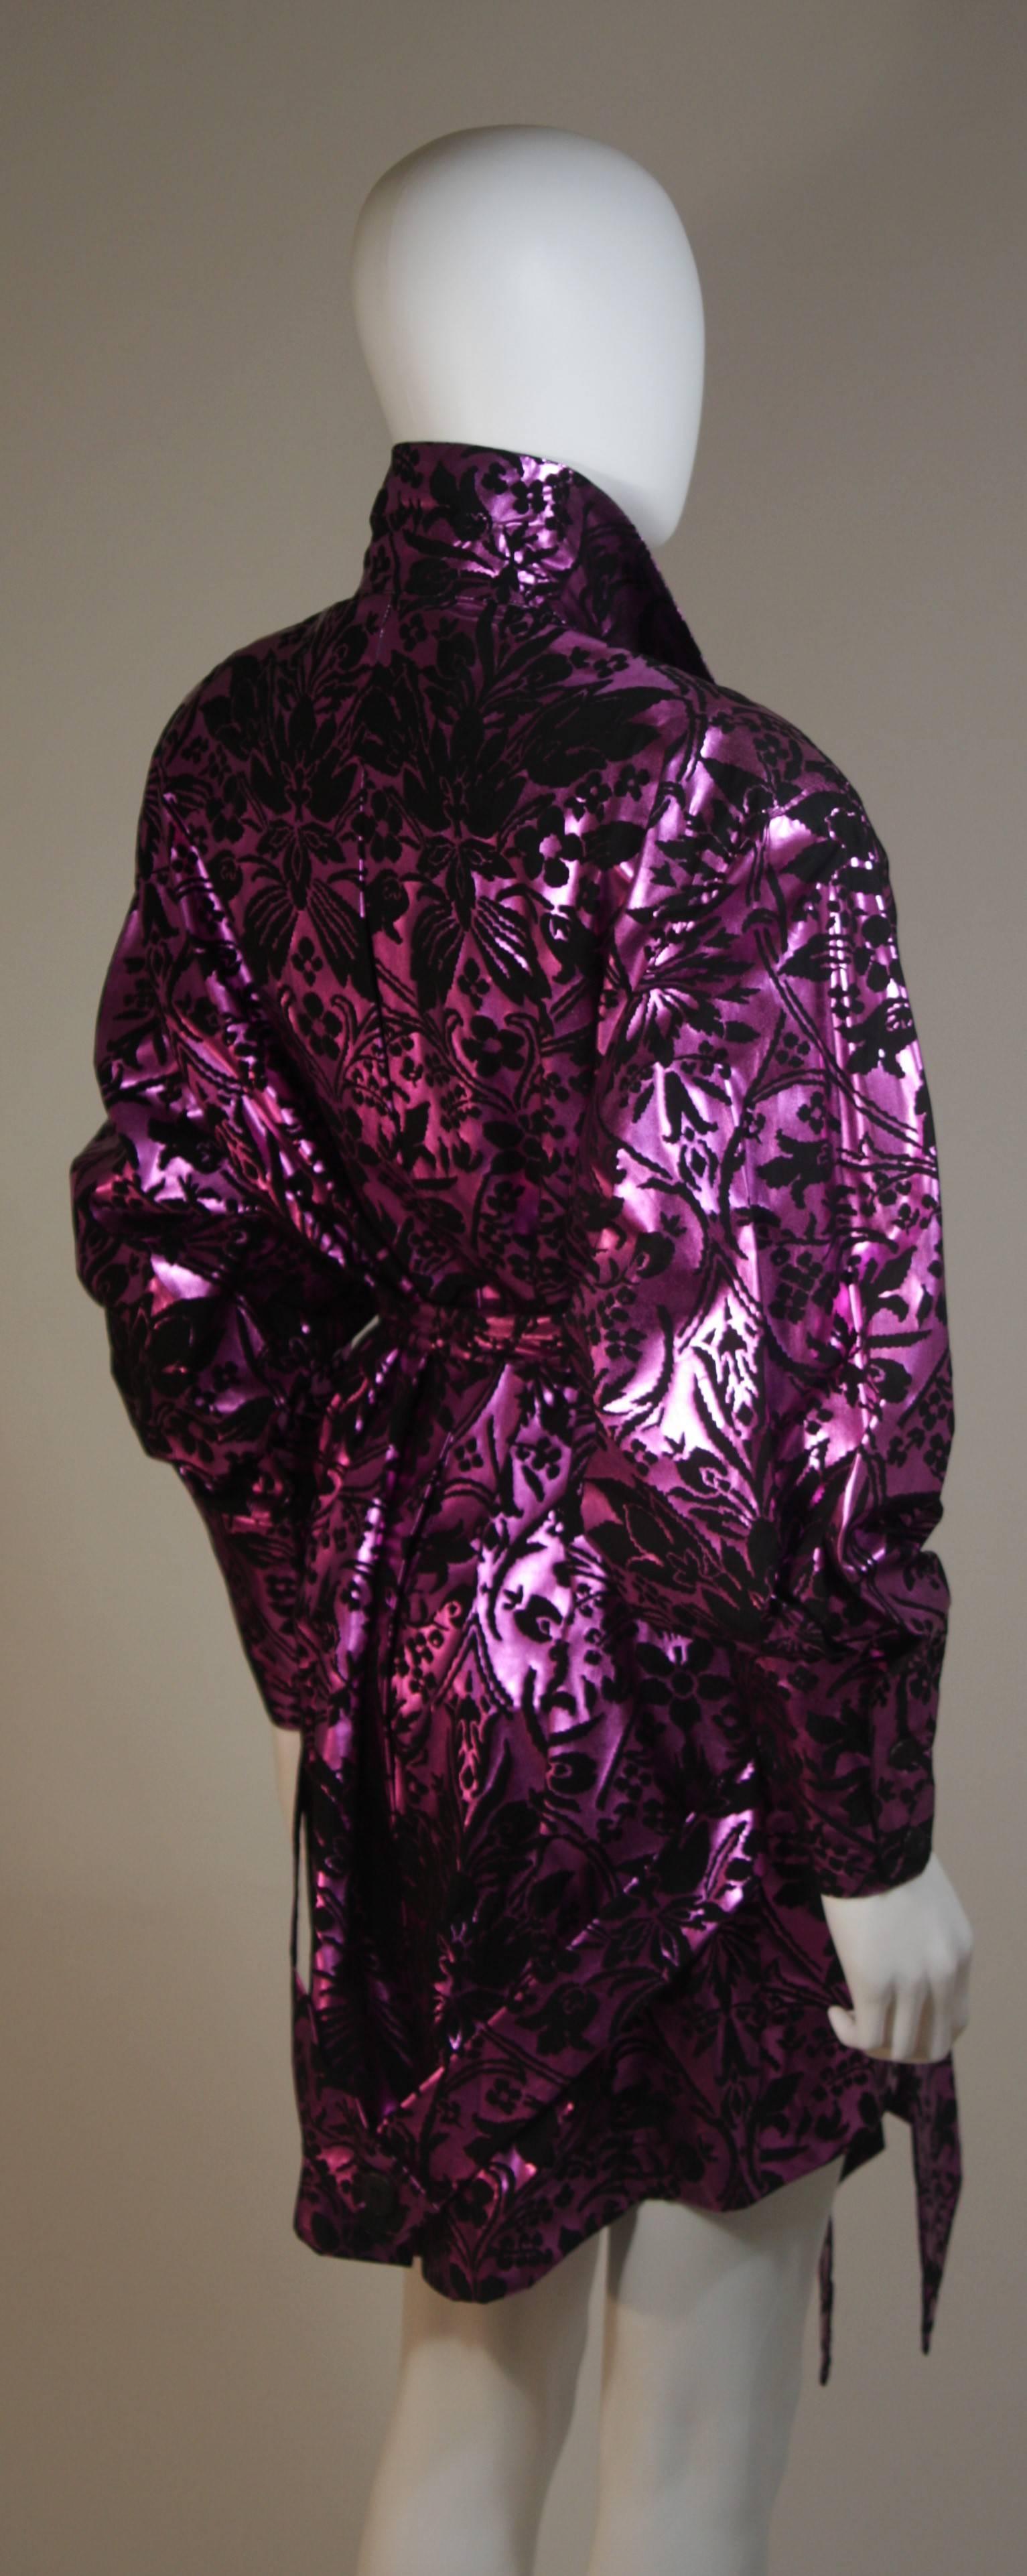 BYBLOS AMEN WARDY Purple Foiled Dress Jacket with Belt Size 44 IT 1